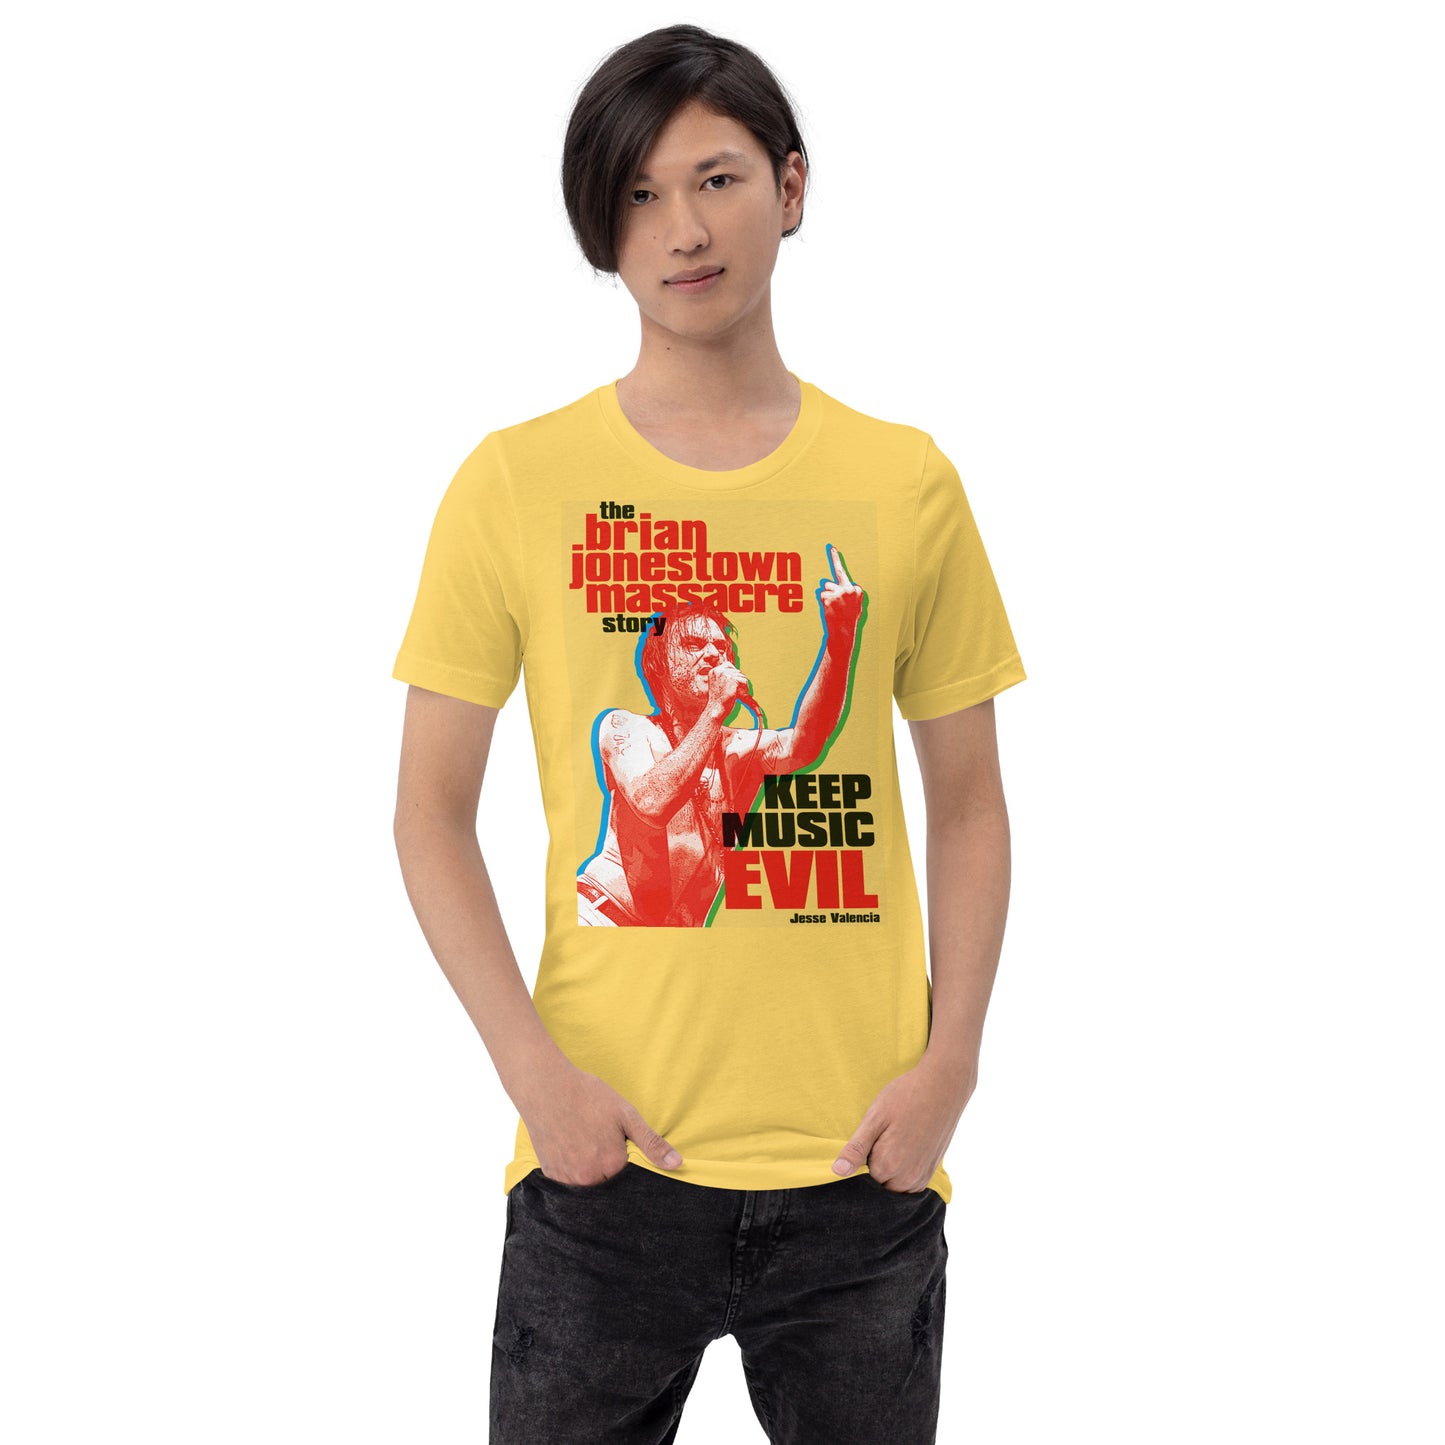 Official "Keep Music Evil: The Brian Jonestown Massacre Story" Unisex T-shirt